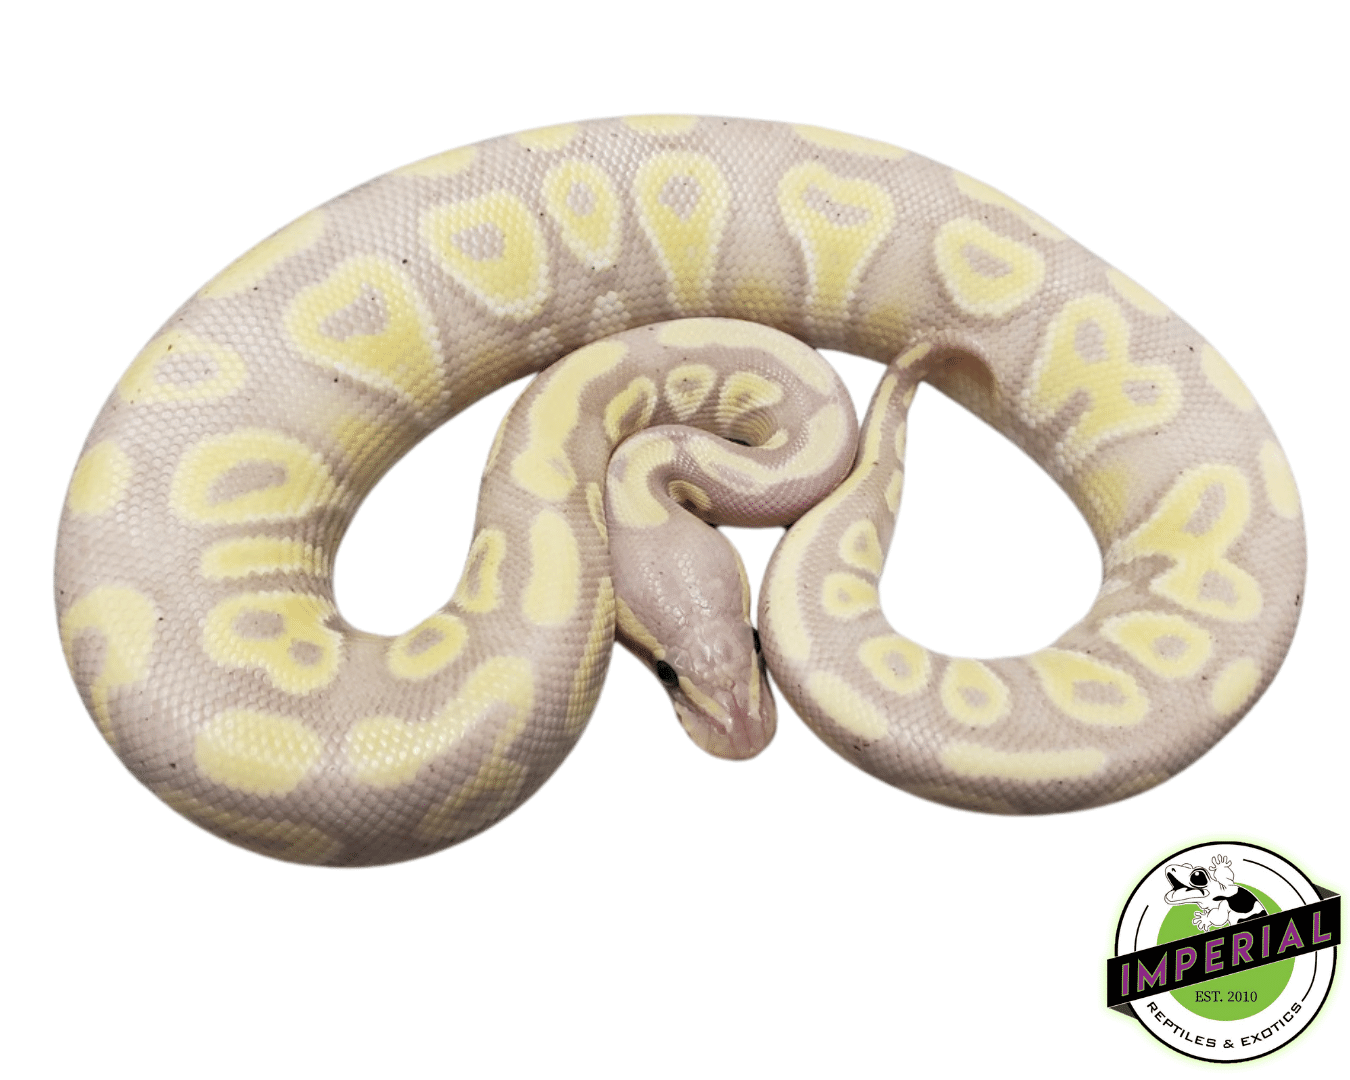 banana mojave ball python for sale, buy reptiles online